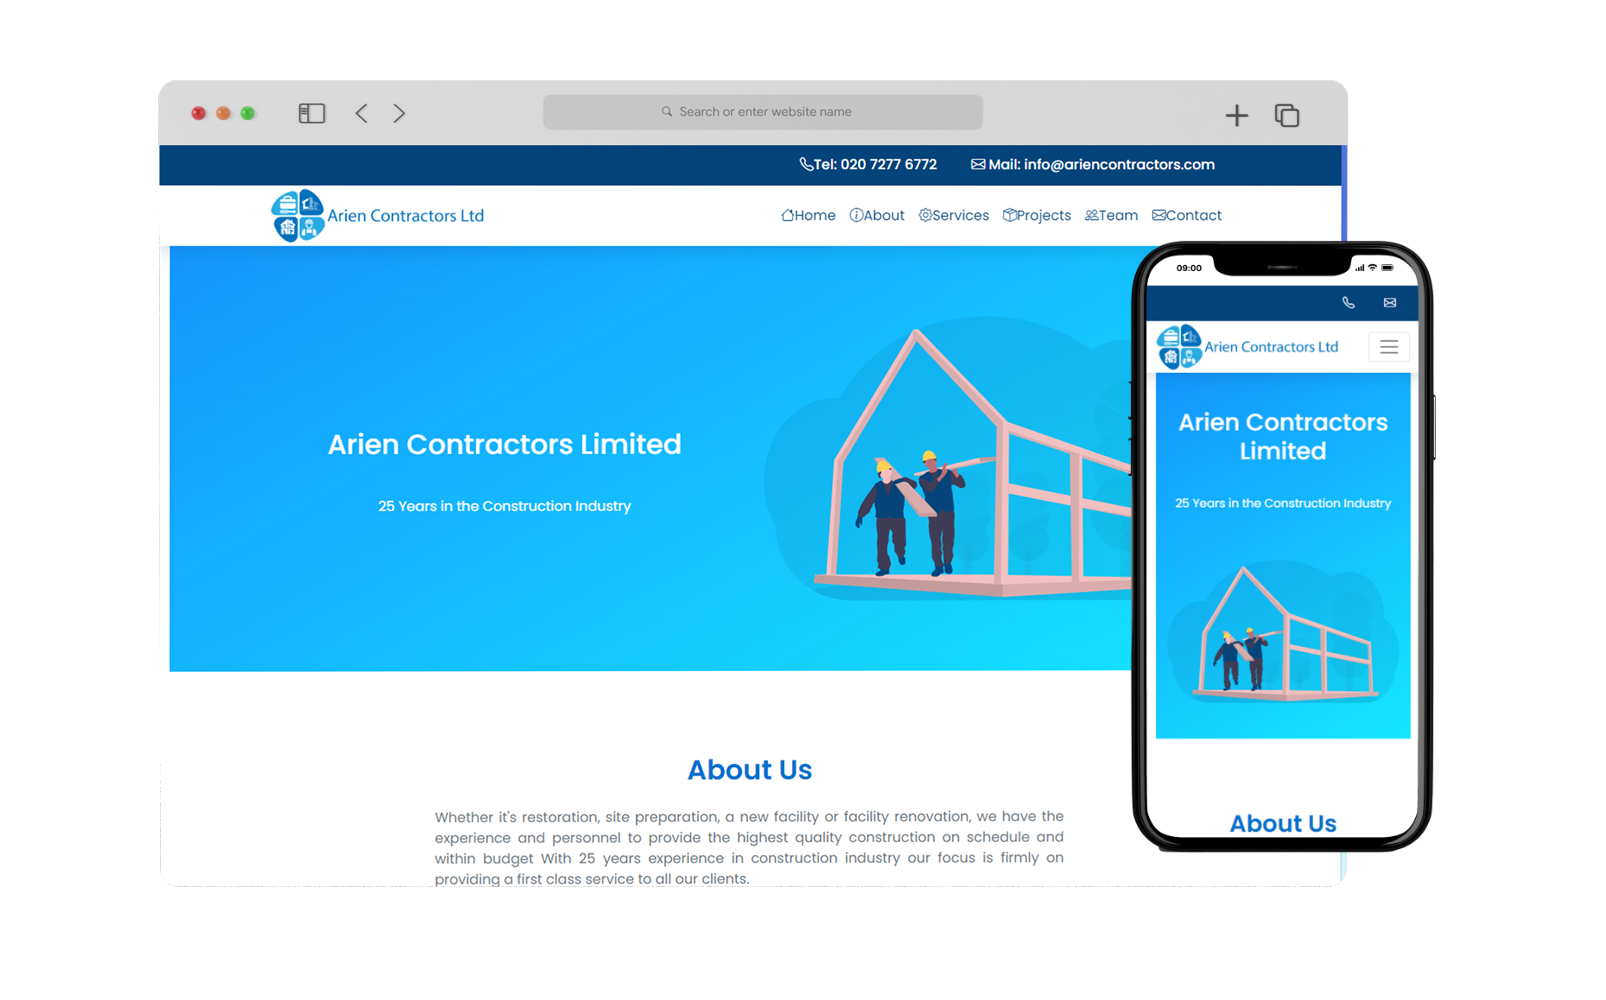 Arien Contractors Ltd